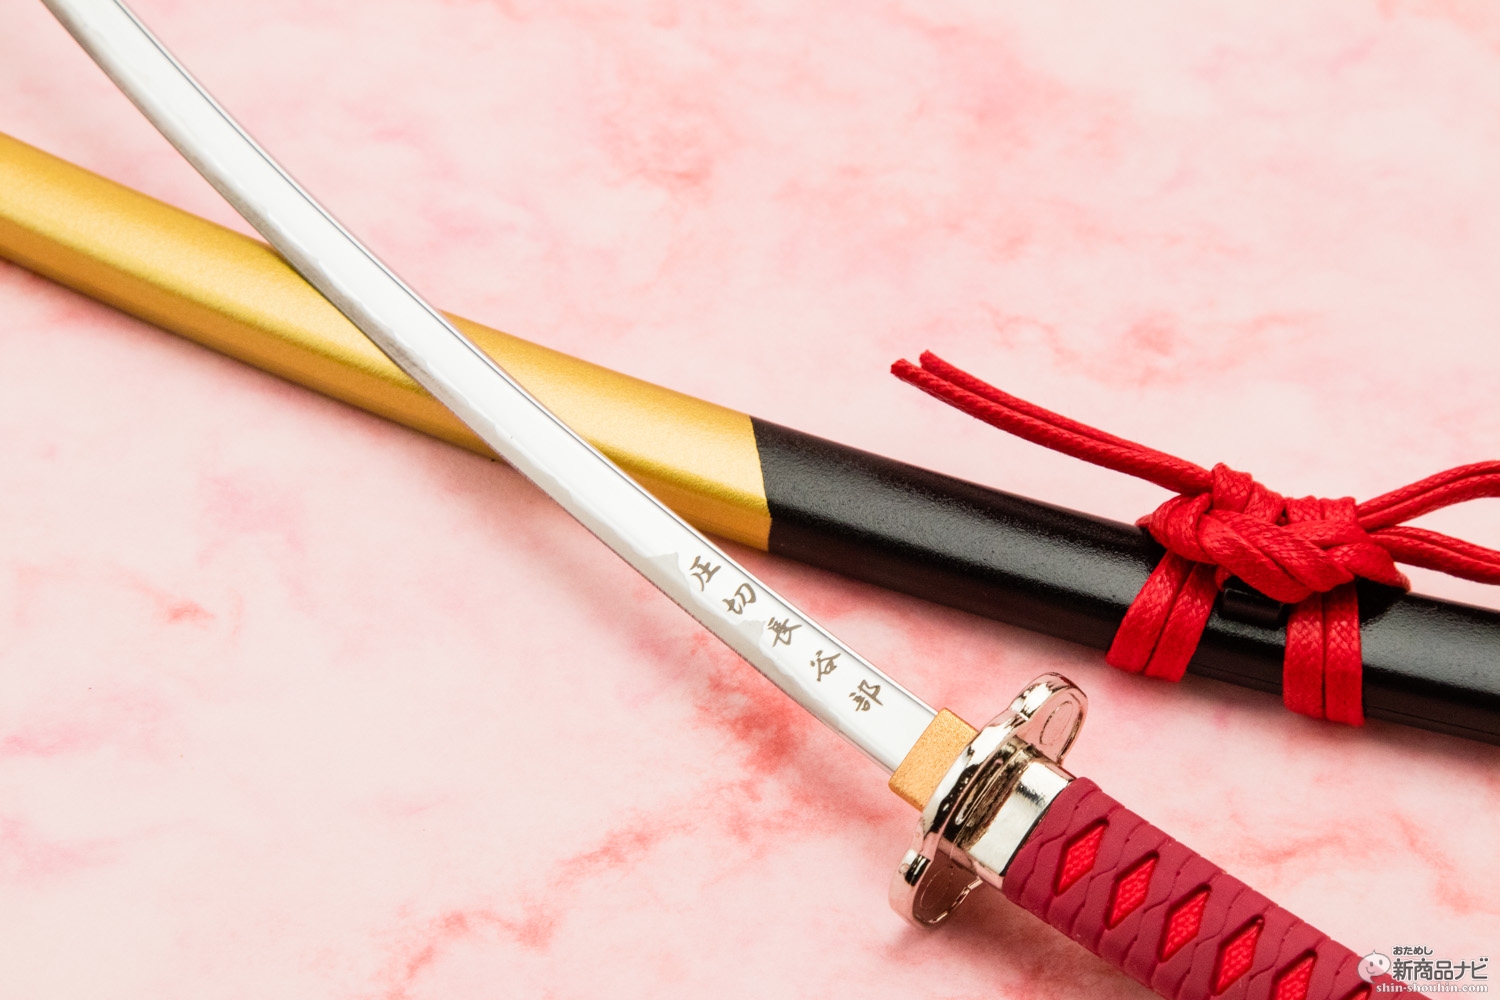 おためし新商品ナビ Blog Archive 名刀ペーパーナイフ 刀剣女子 も垂涎の本格派な名刀を模したペーパーナイフ